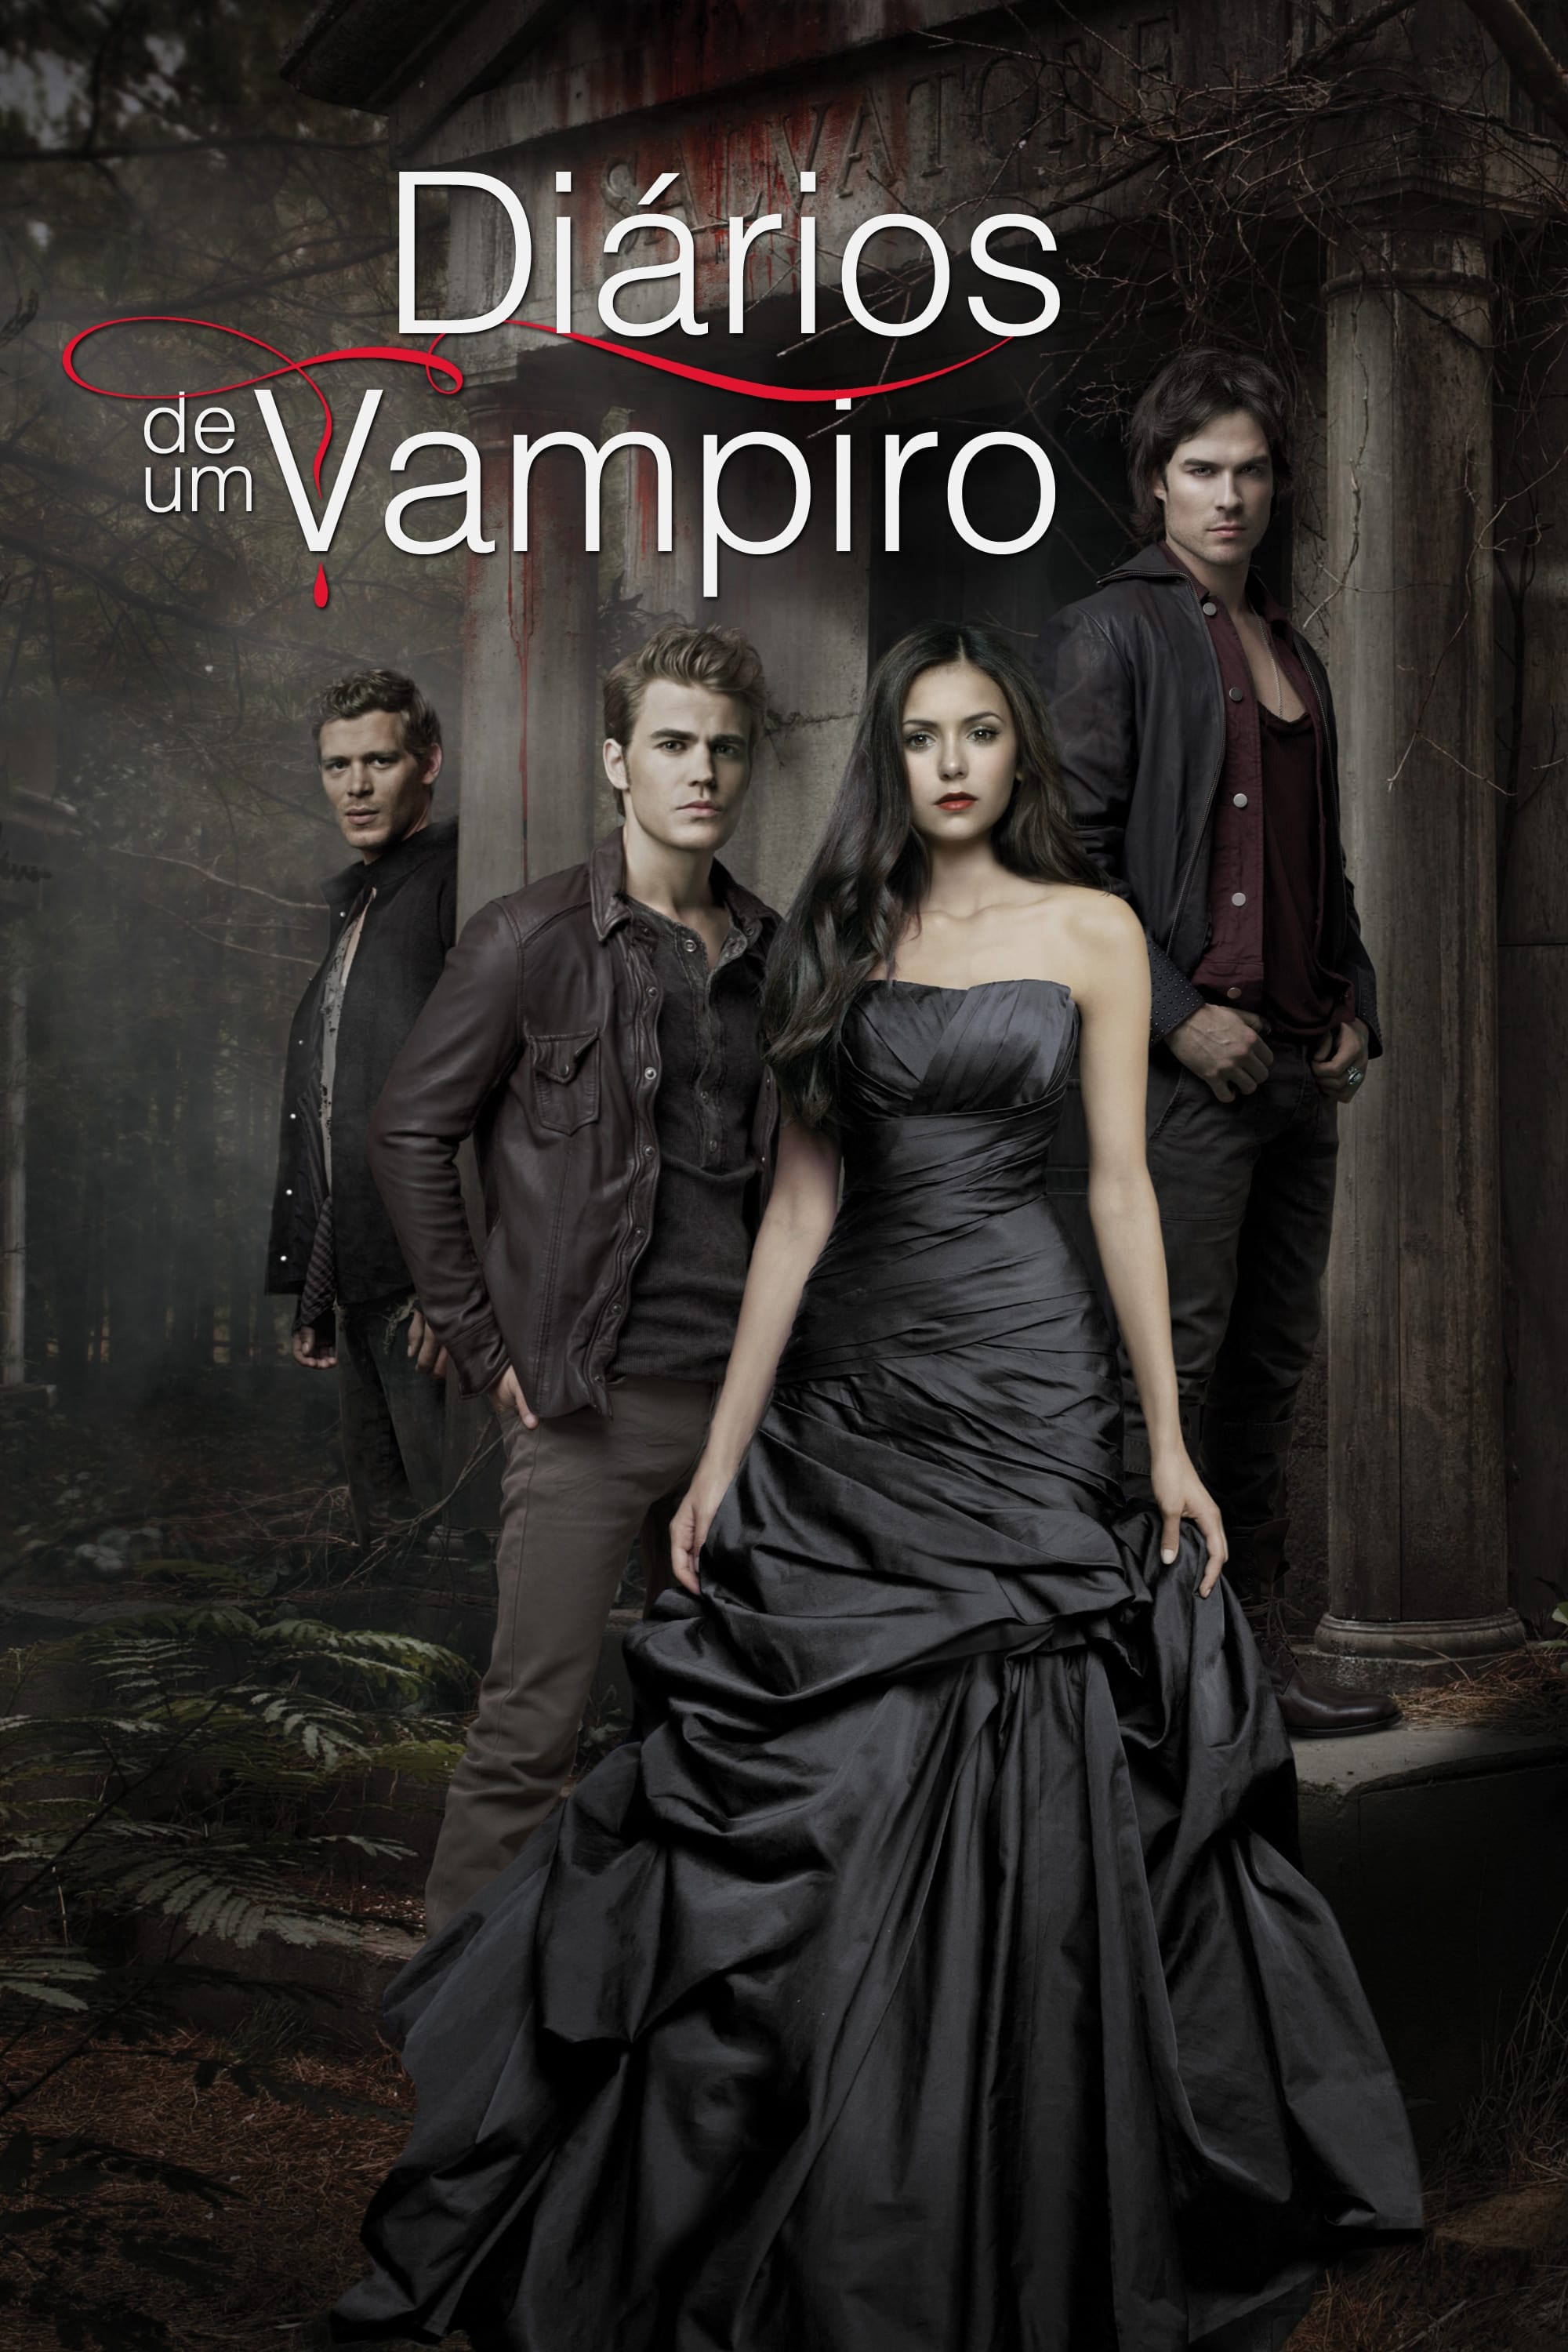 Diários do Vampiro (TV Series 2009-2017) - Cartazes — The Movie